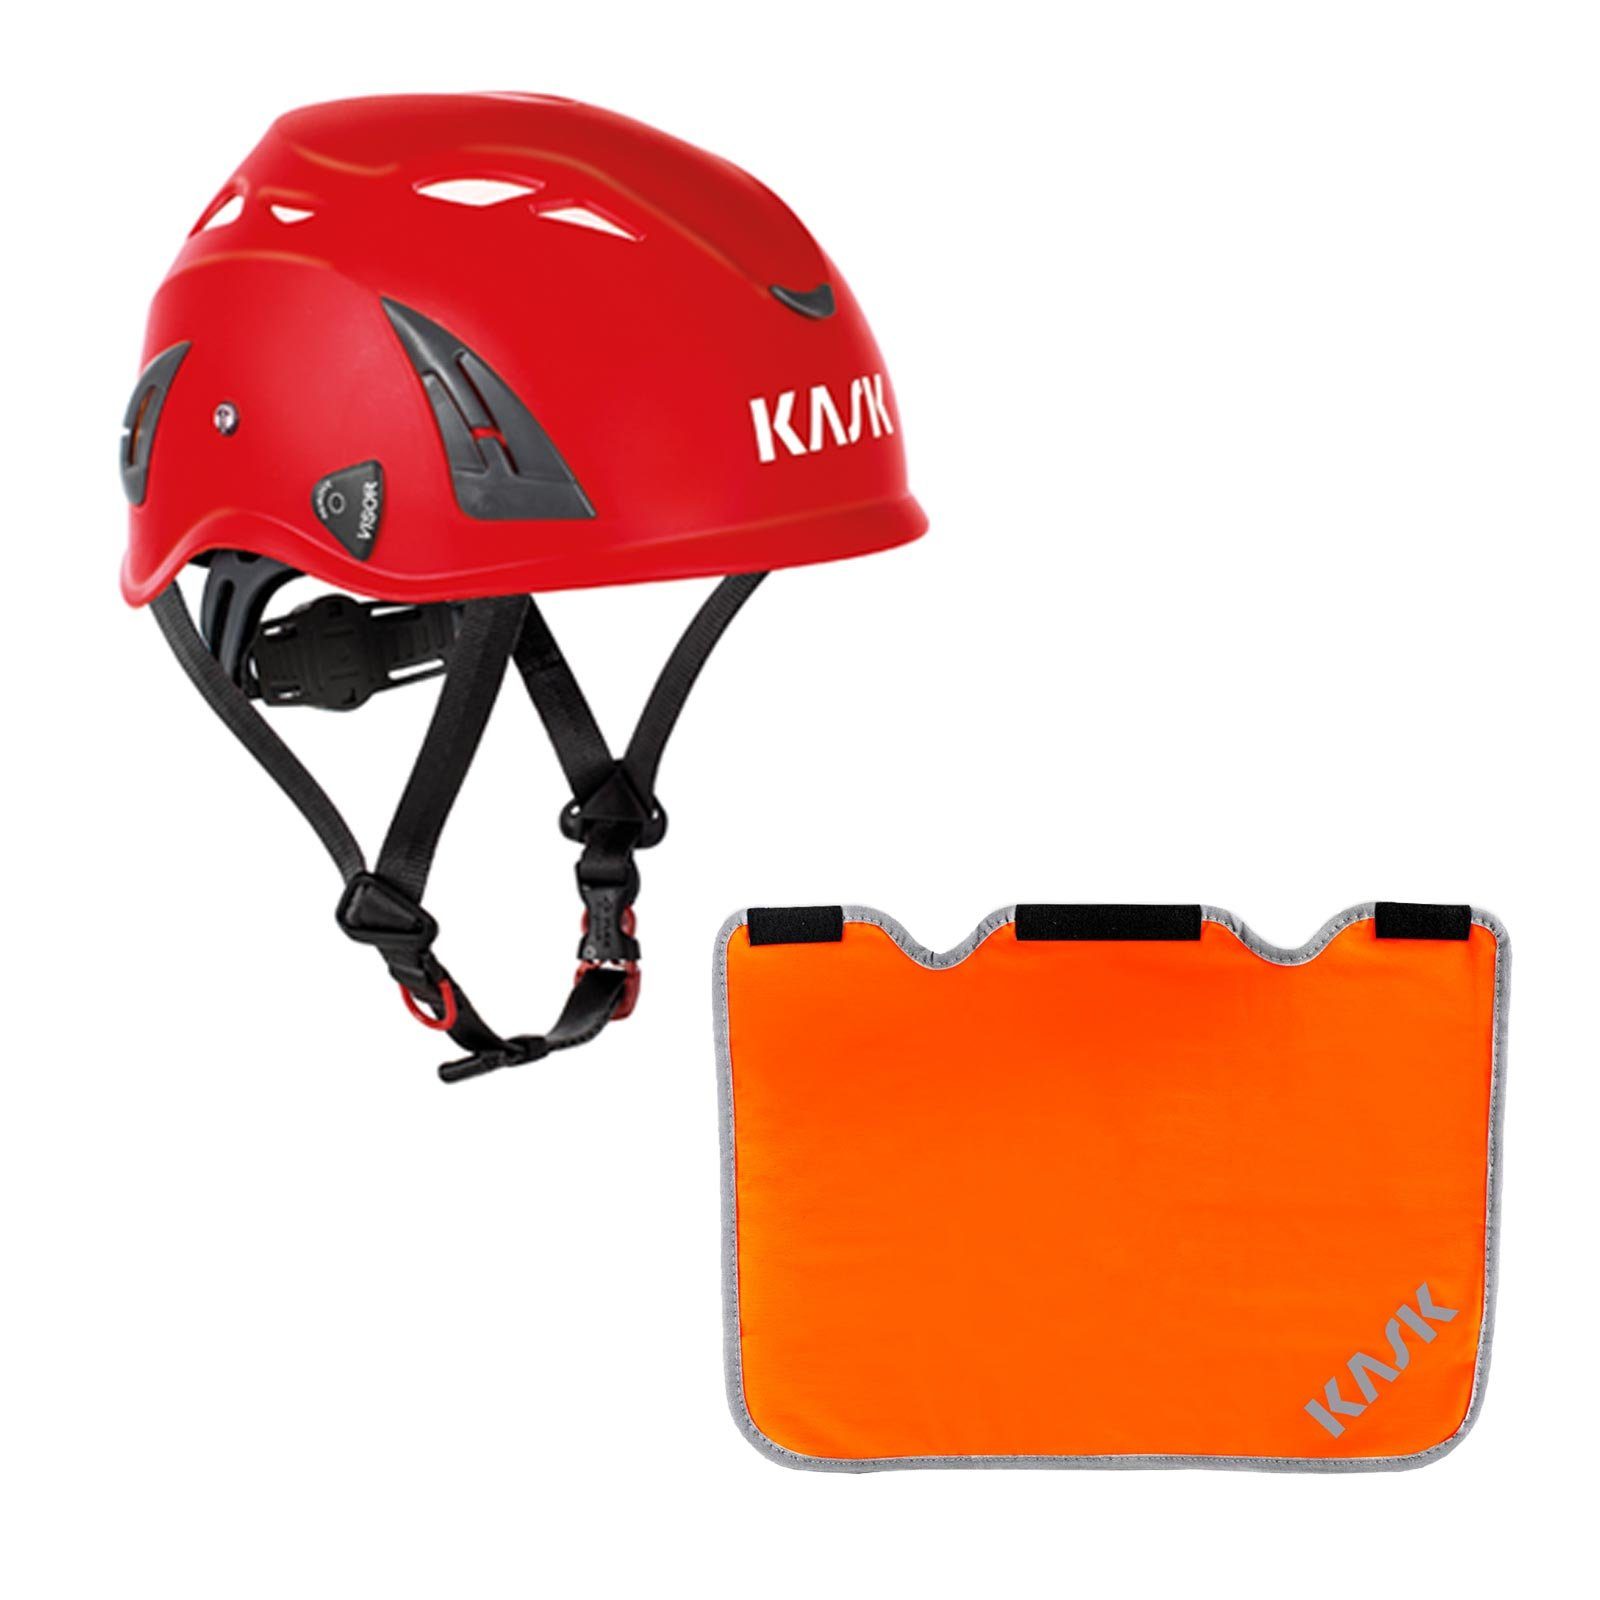 Kask Schutzhelm Plasma AQ Arbeitsschutzhelm + Nackenschutz orange mit BG Bau Förderung rot | Kopfschutz